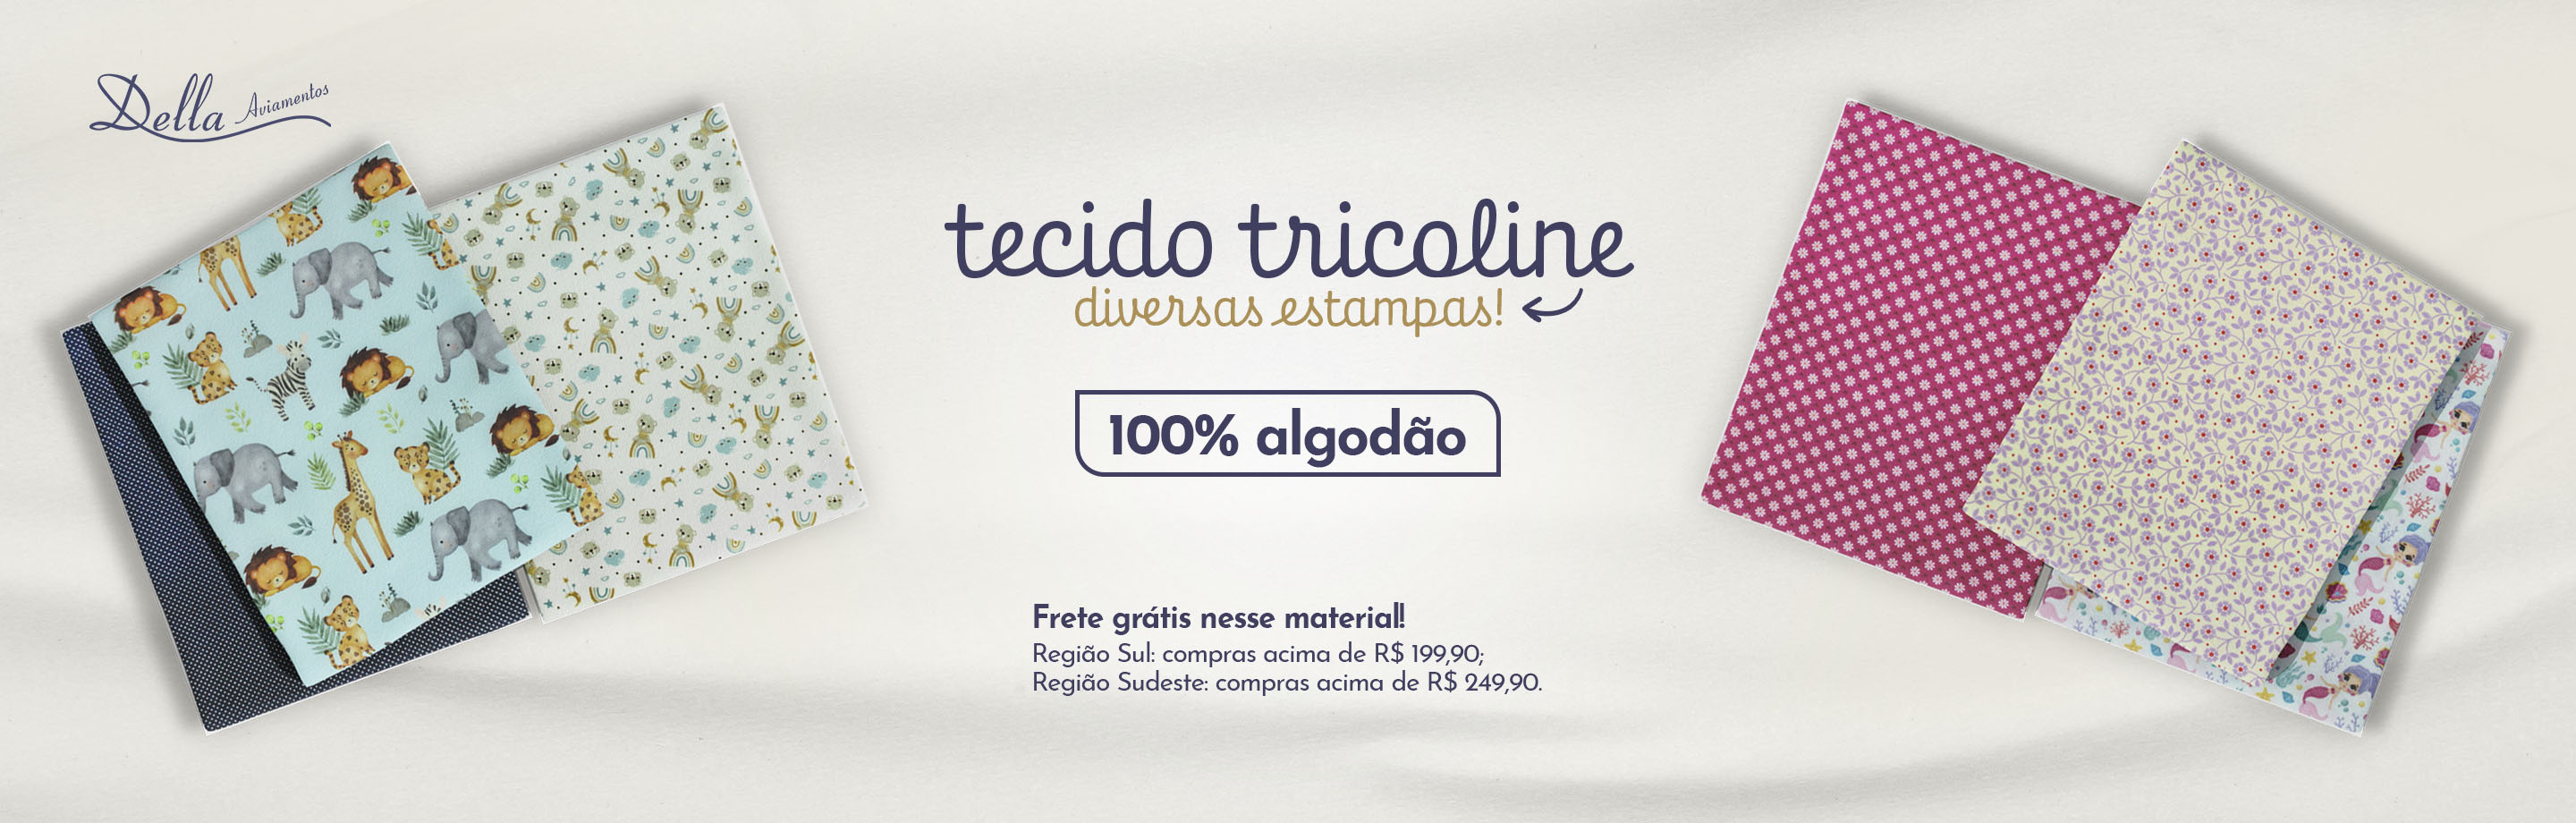 Banner Tecido Tricoline